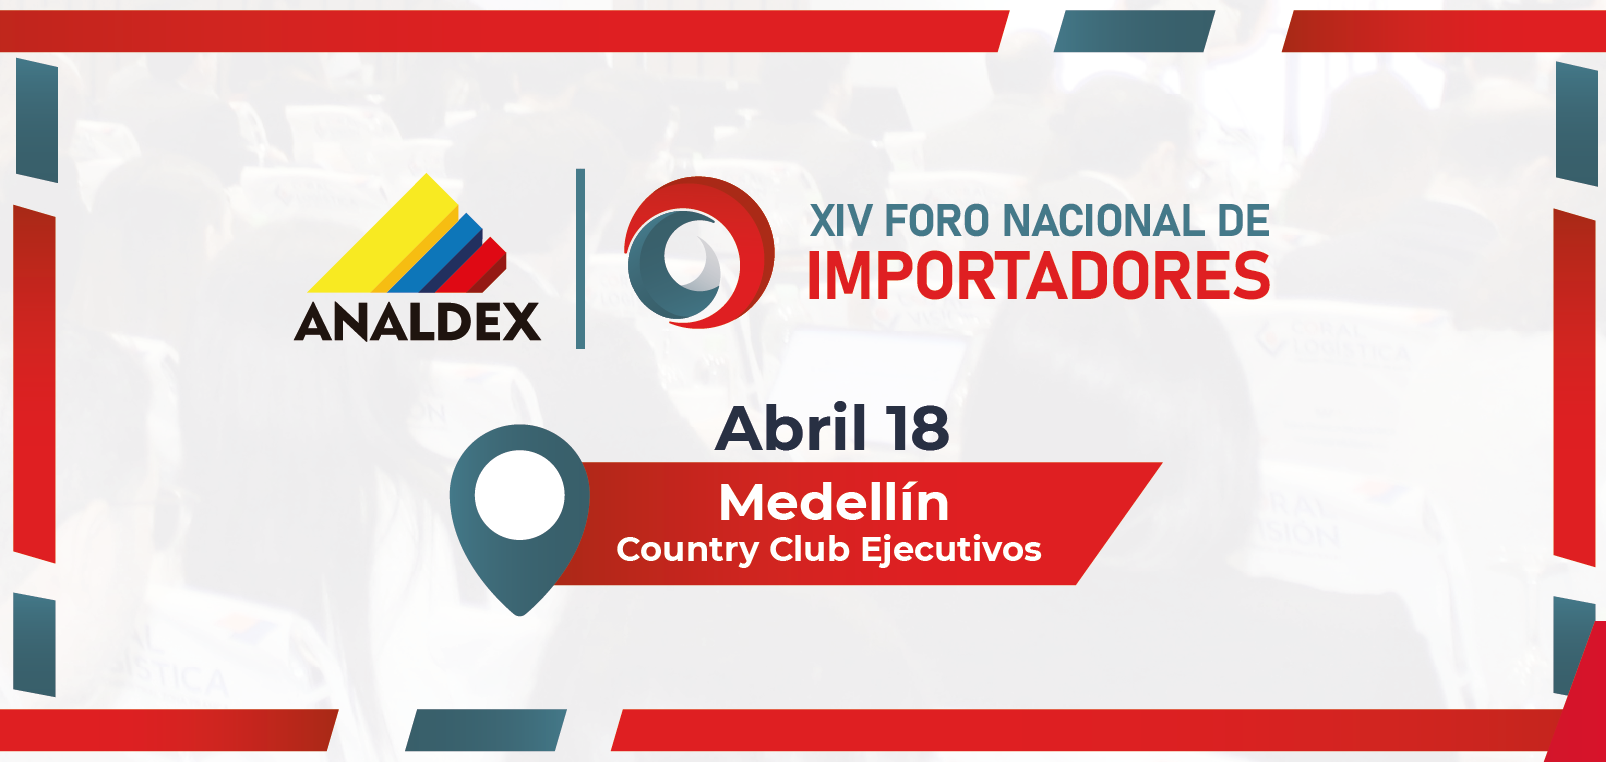 XIV Foro Nacional de Importadores - Medellin